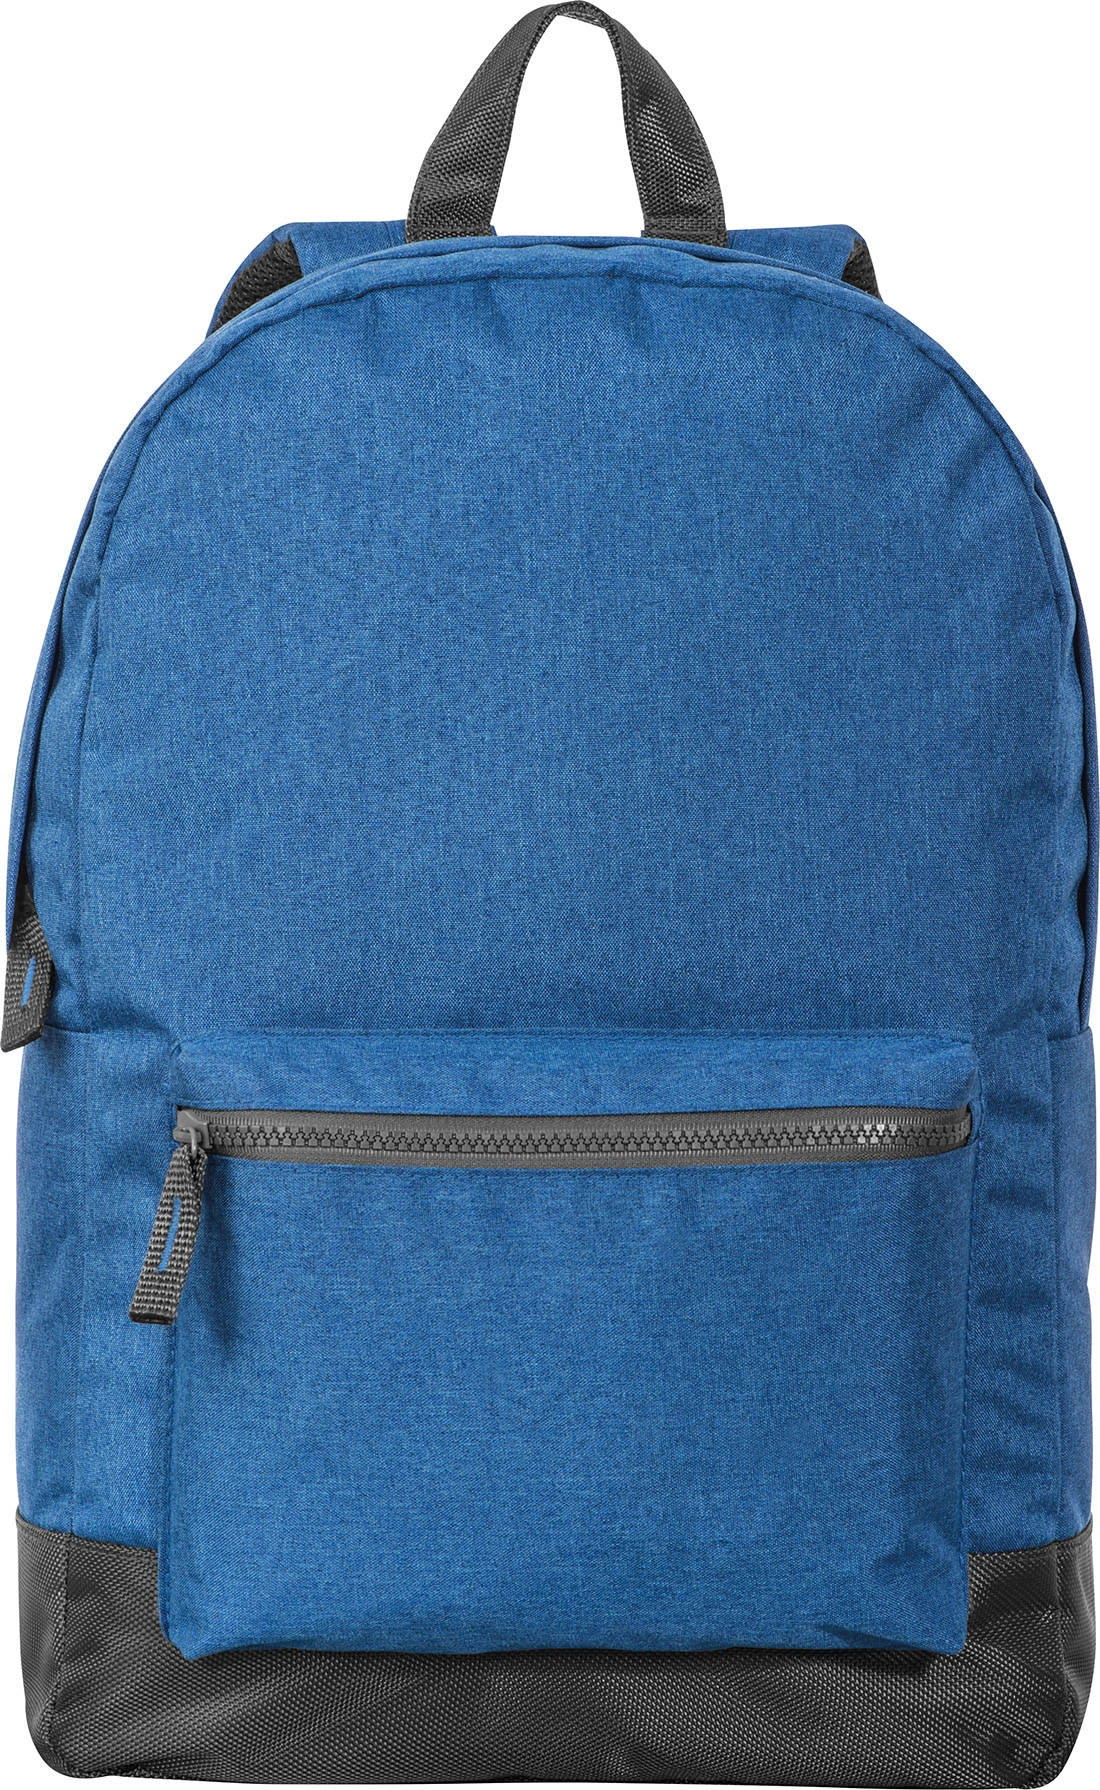 Plecak z poliestru GM-60389-04 niebieski